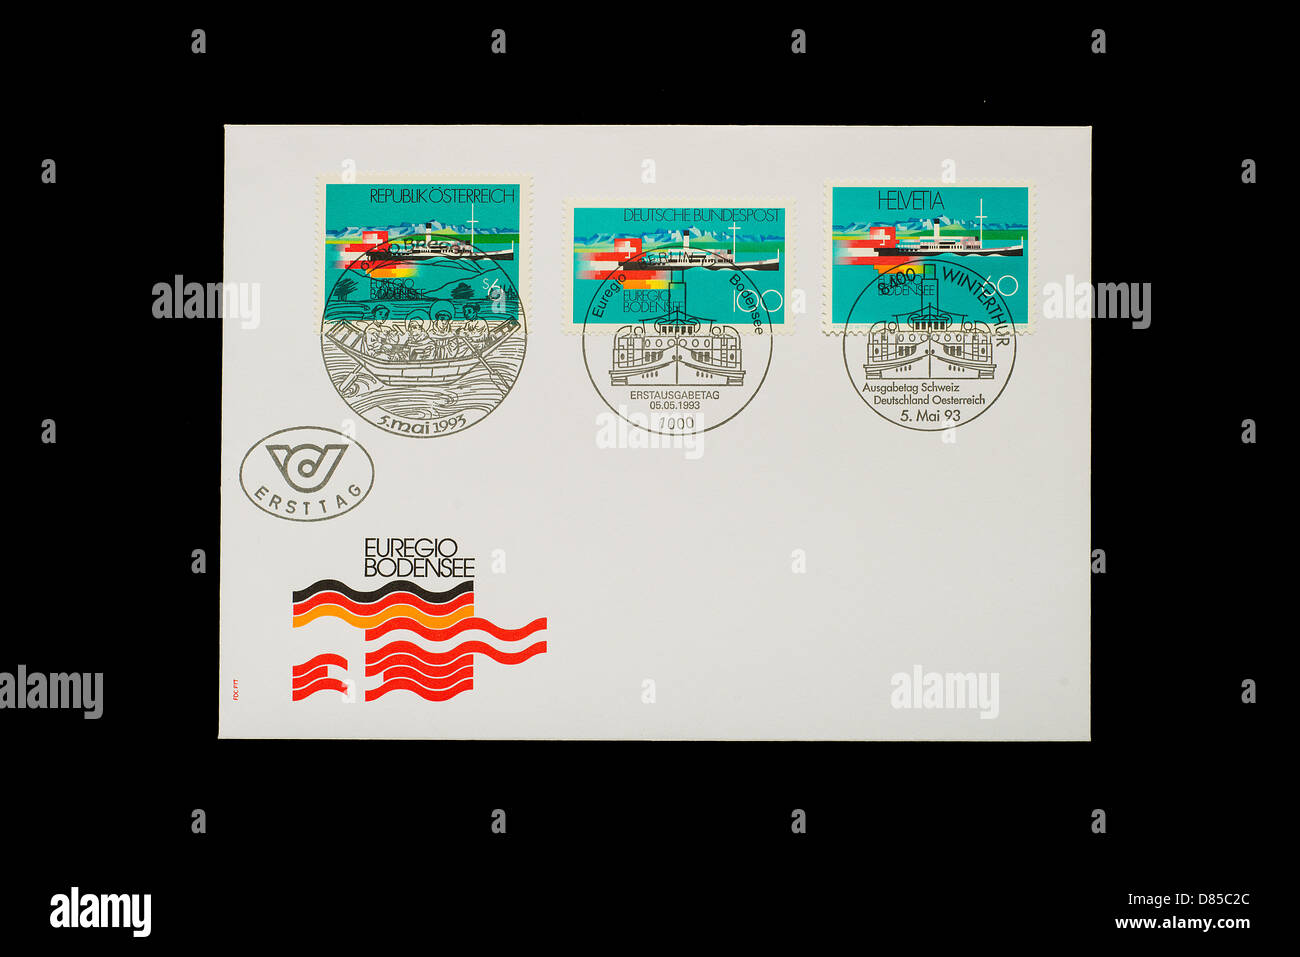 Switzerland Post Mark Stamp Stockfotos und -bilder Kaufen - Seite 2 - Alamy